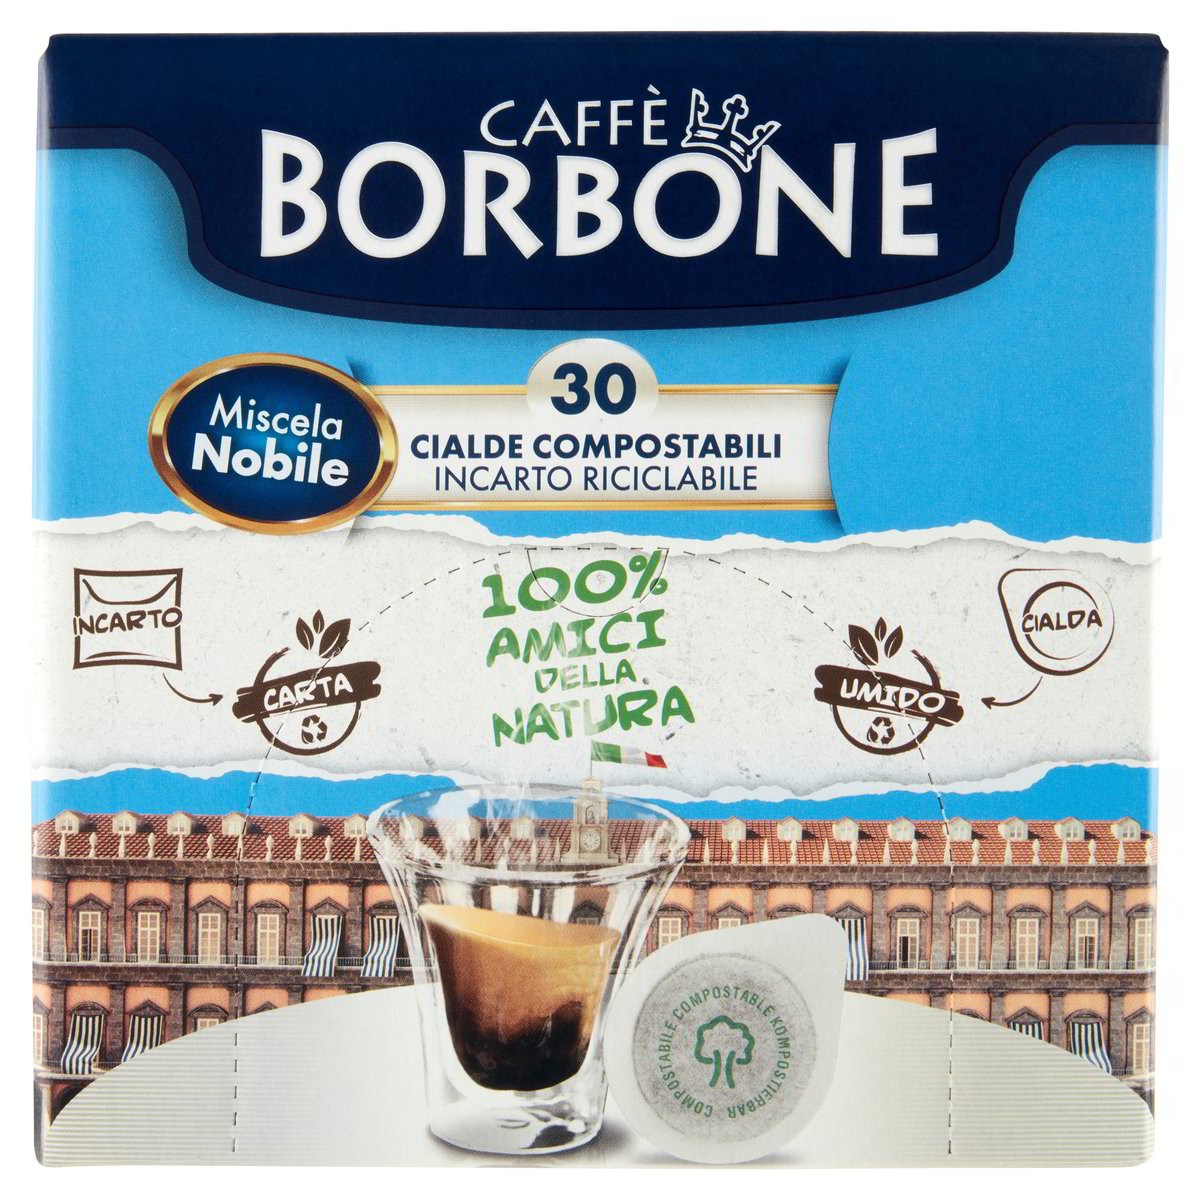 Caffè Borbone NOBILE